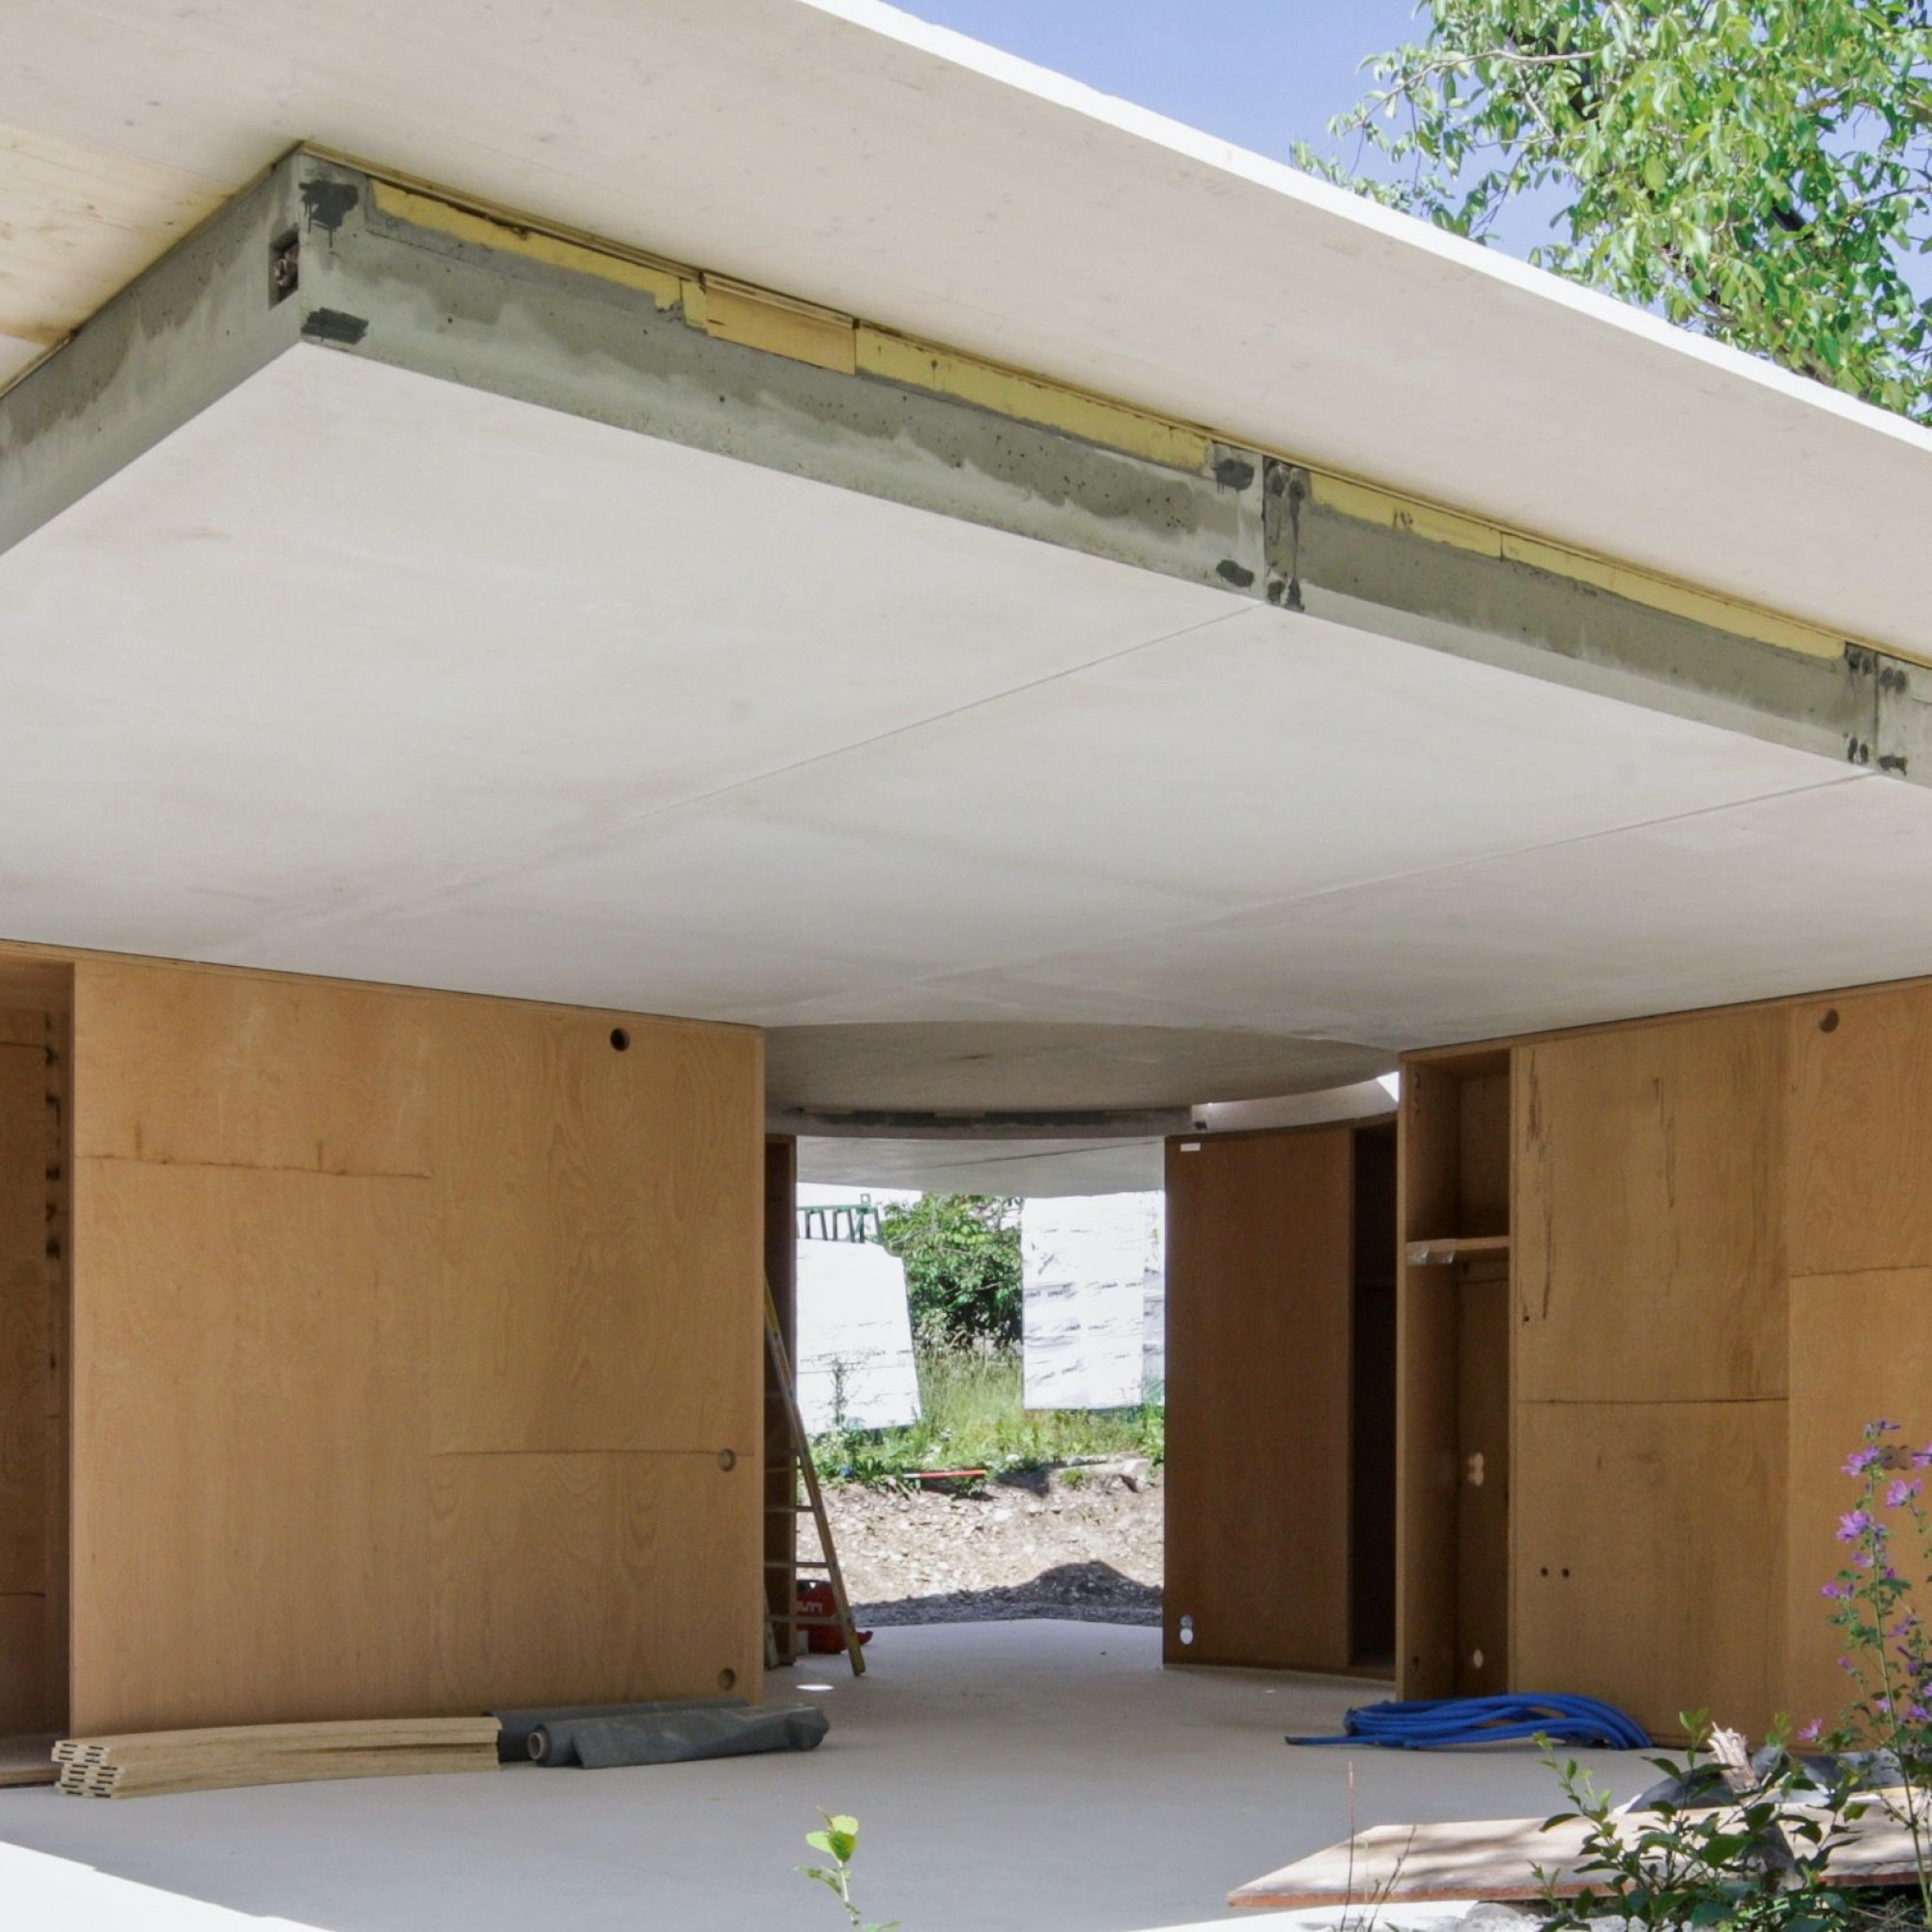 Die vorfabrizierten Dach-Betonelemente sind aus Weisszement mit einem Zuschlag von Carrara-Marmor gefertigt. Die Elemente wiegen 1,5 bis 4,8 Tonnen. 